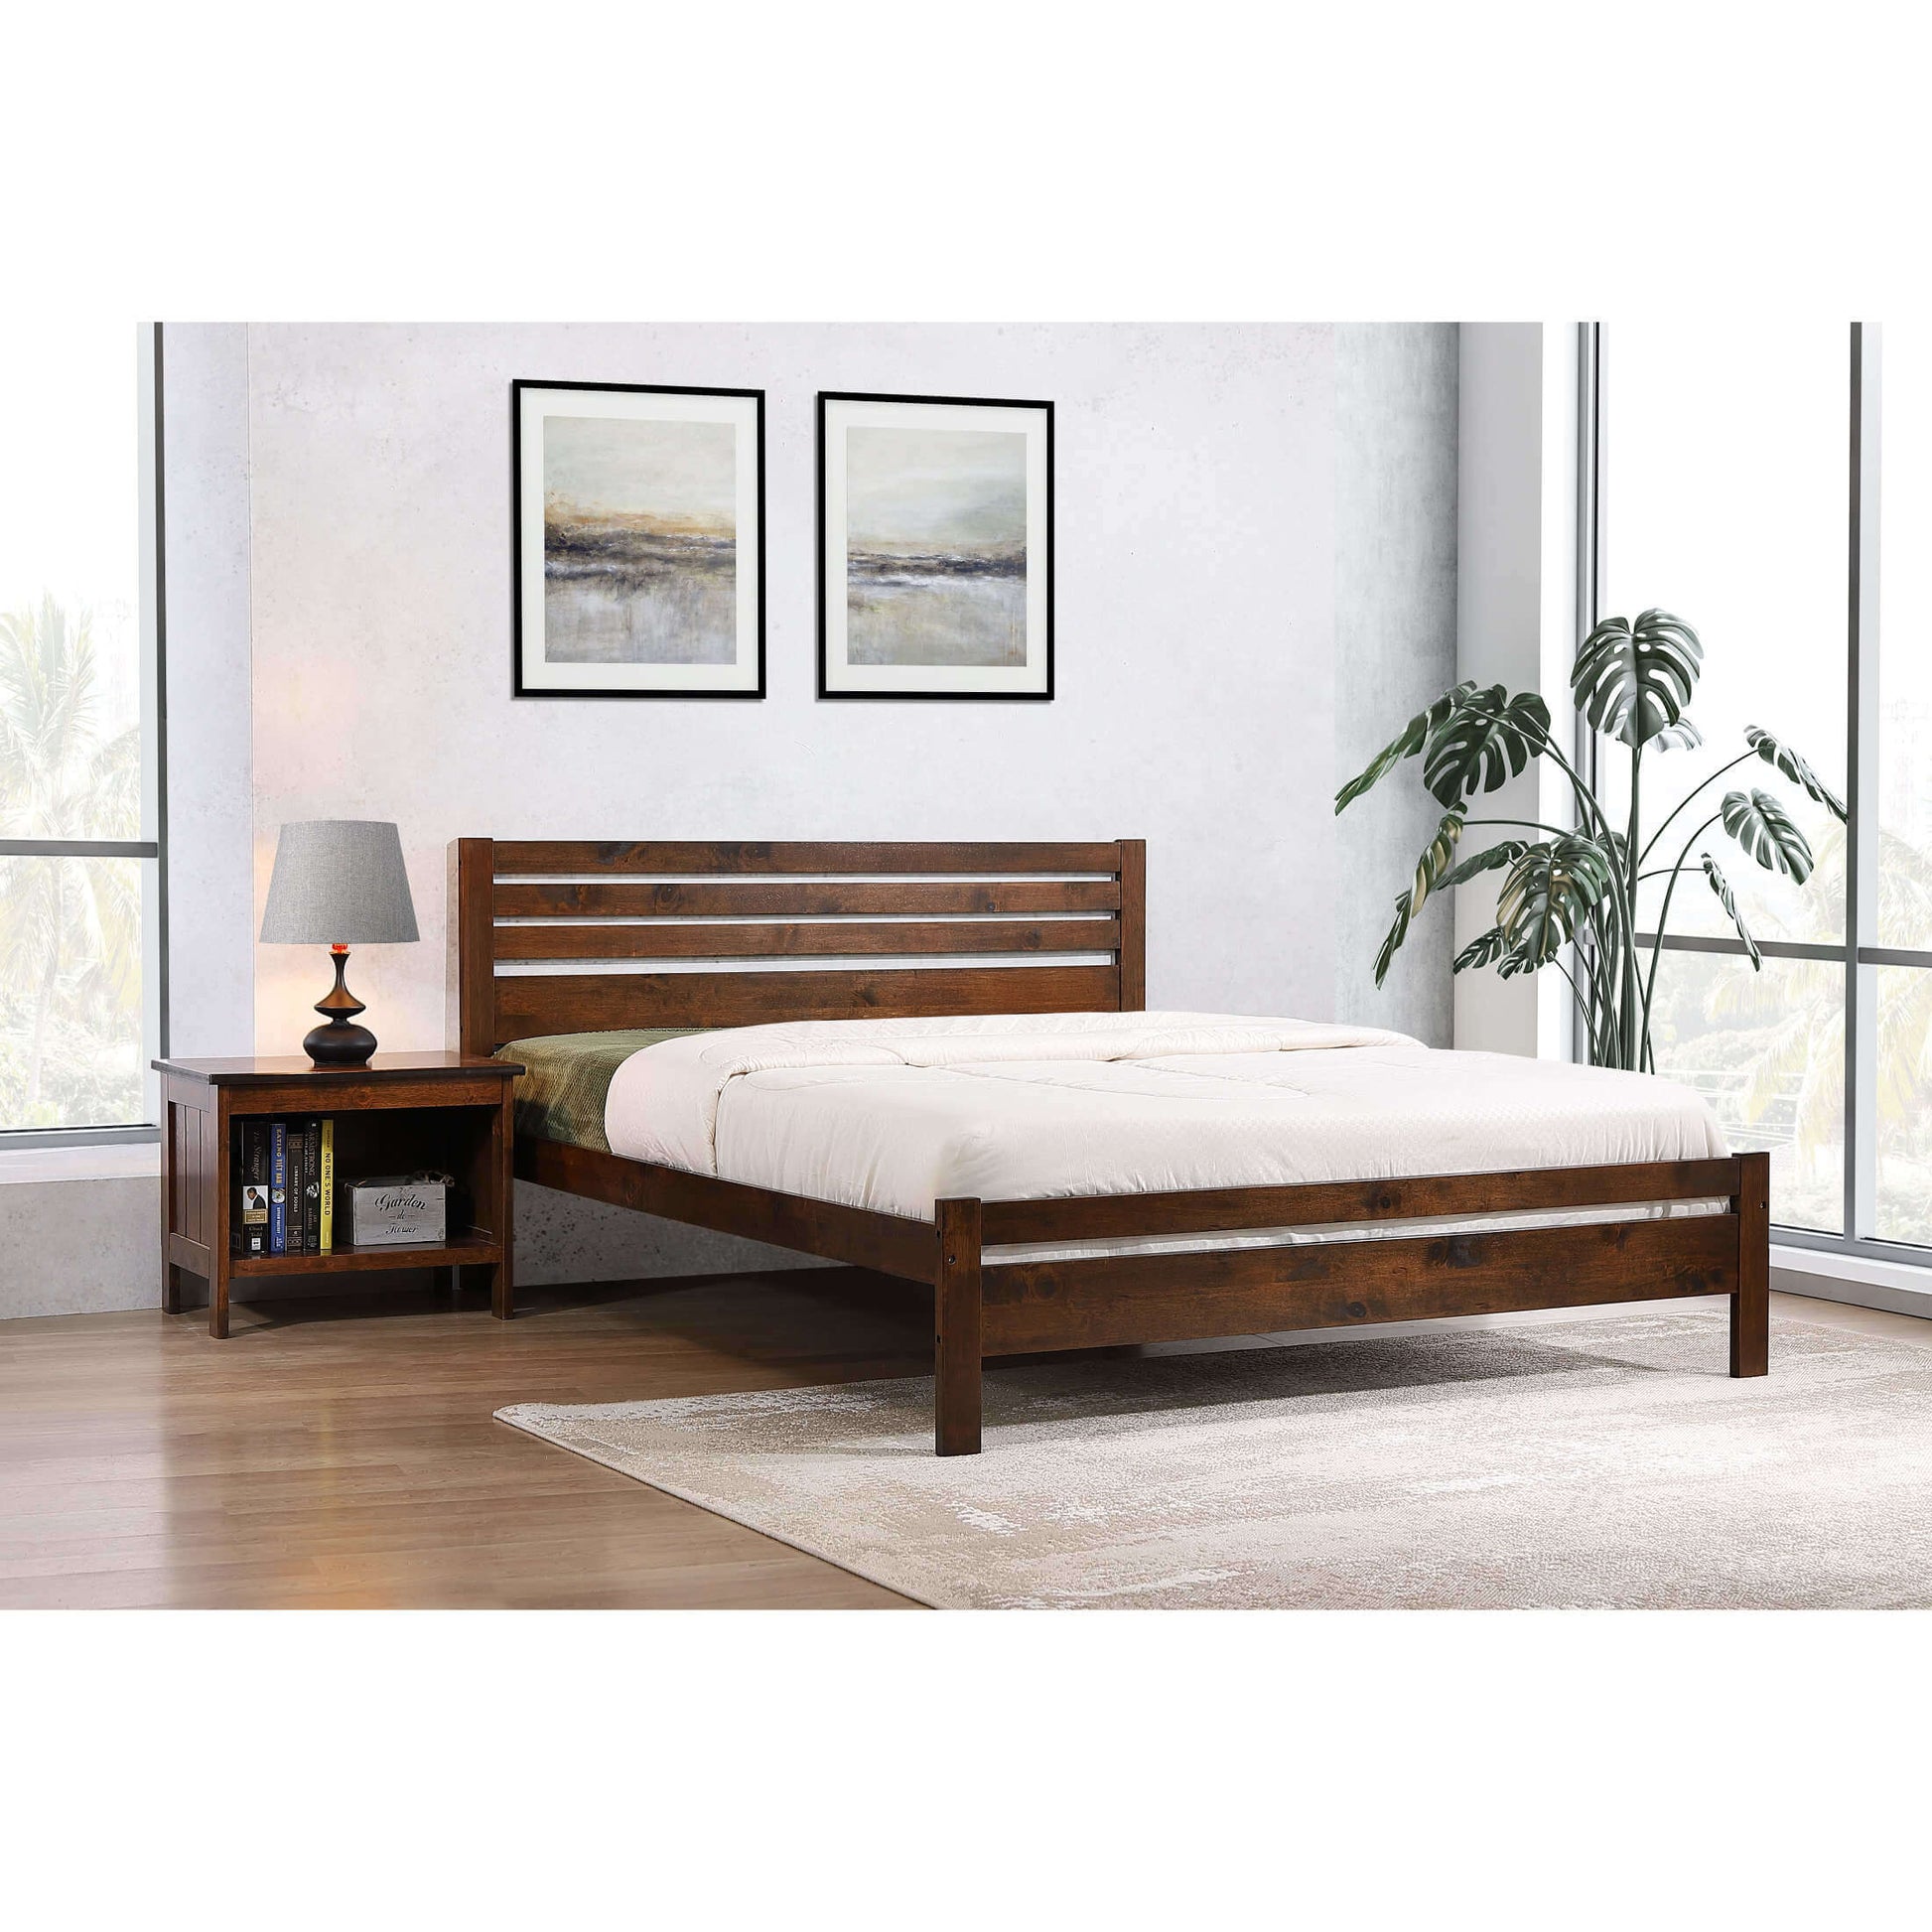 Ashpinoke:Astley King Size Bed Solid Hardwood Antique Oak,King size Beds,Heartlands Furniture